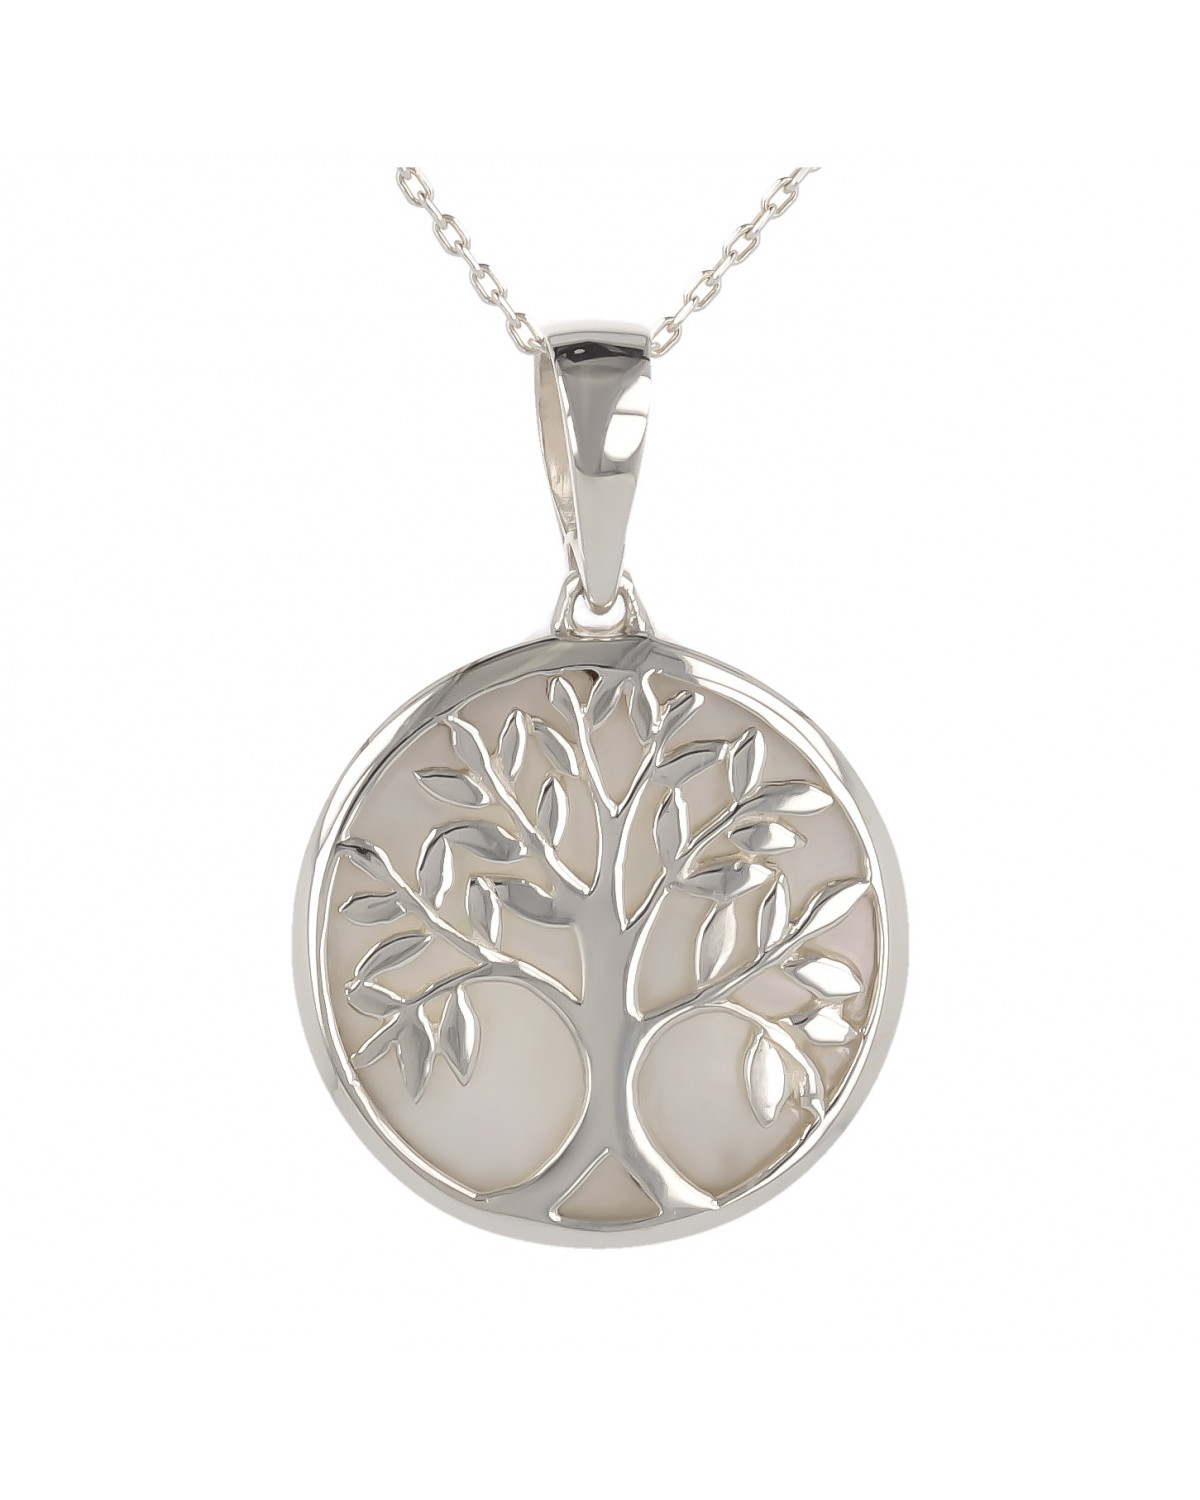 Schmuck-Geschenk-Symbol Baum des Lebens-Anhänger-Weiss Perlmutt-Silber-Rund-Unisex